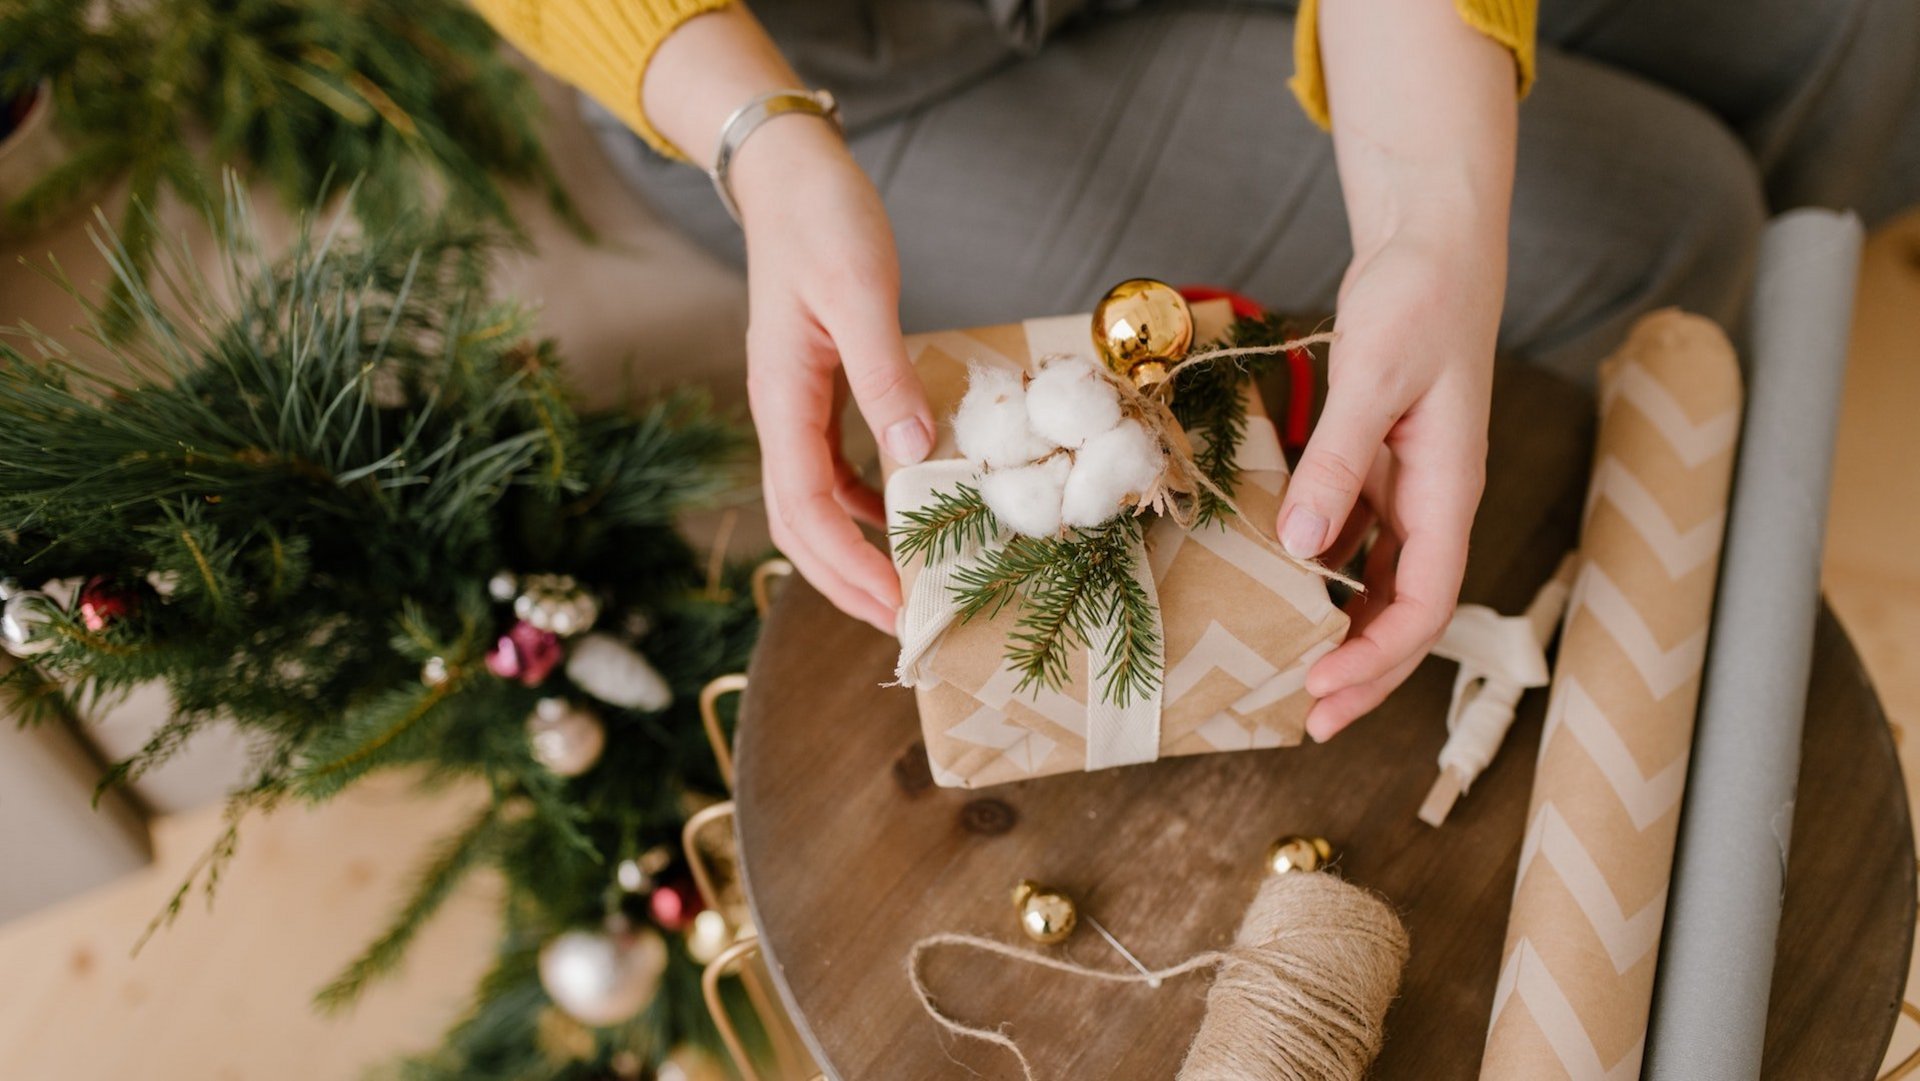 Das Foto zeigt die Hände einer Person, die ein Geschenk weihnachtlich verpackt.